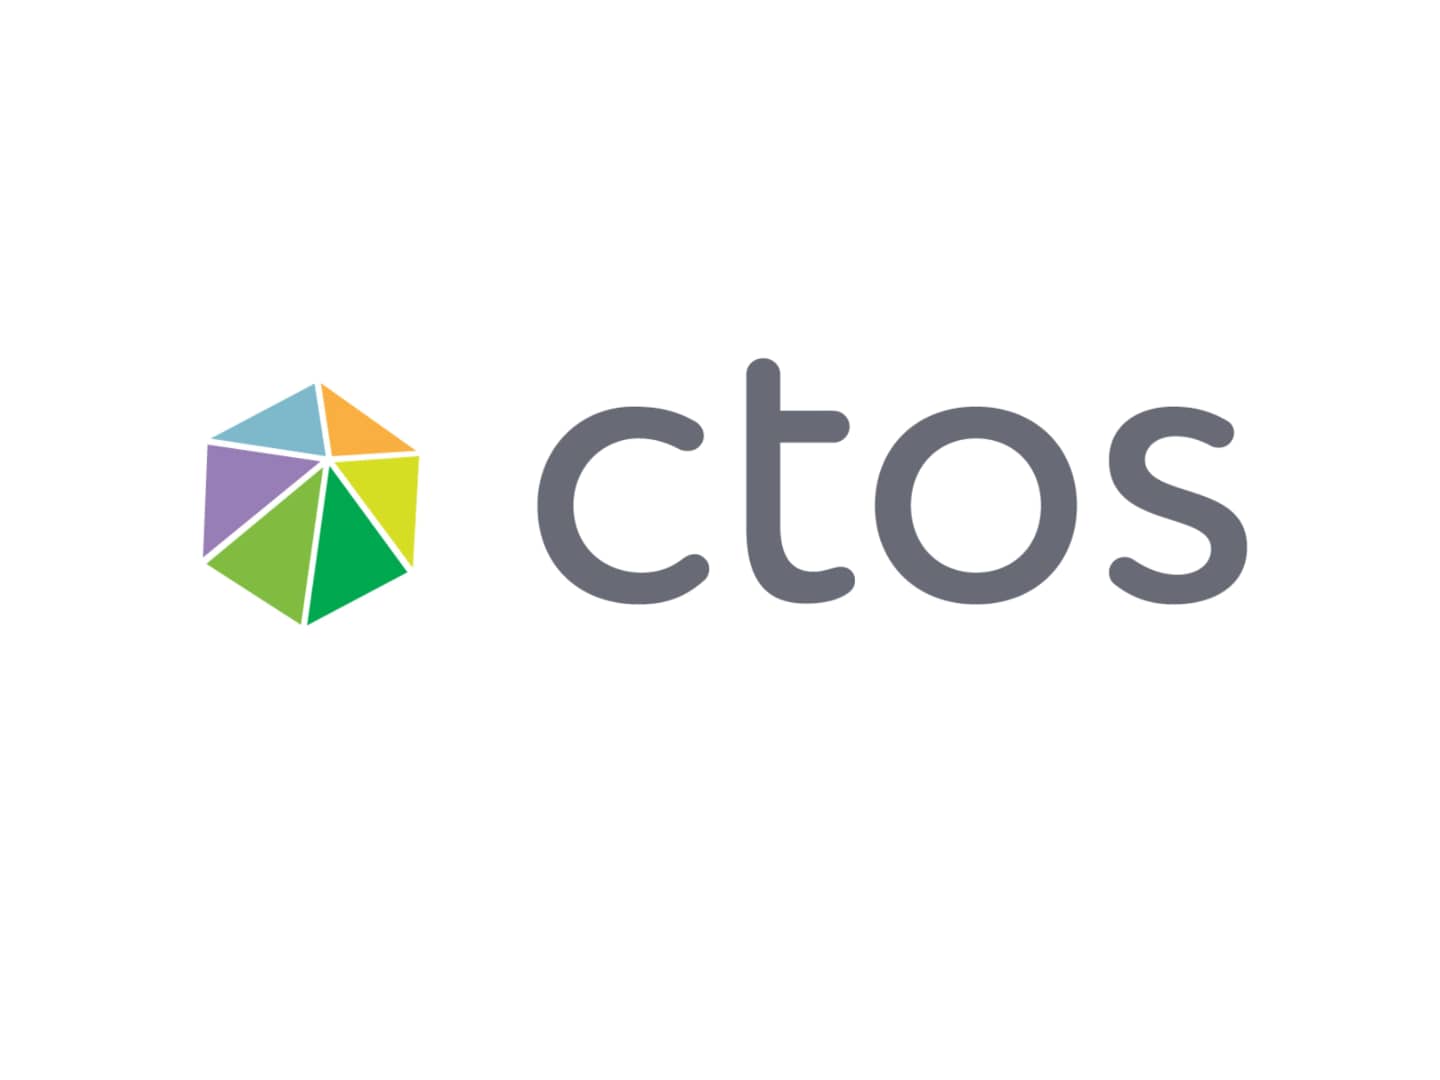 CTOS Logo - CTOS Logo Build